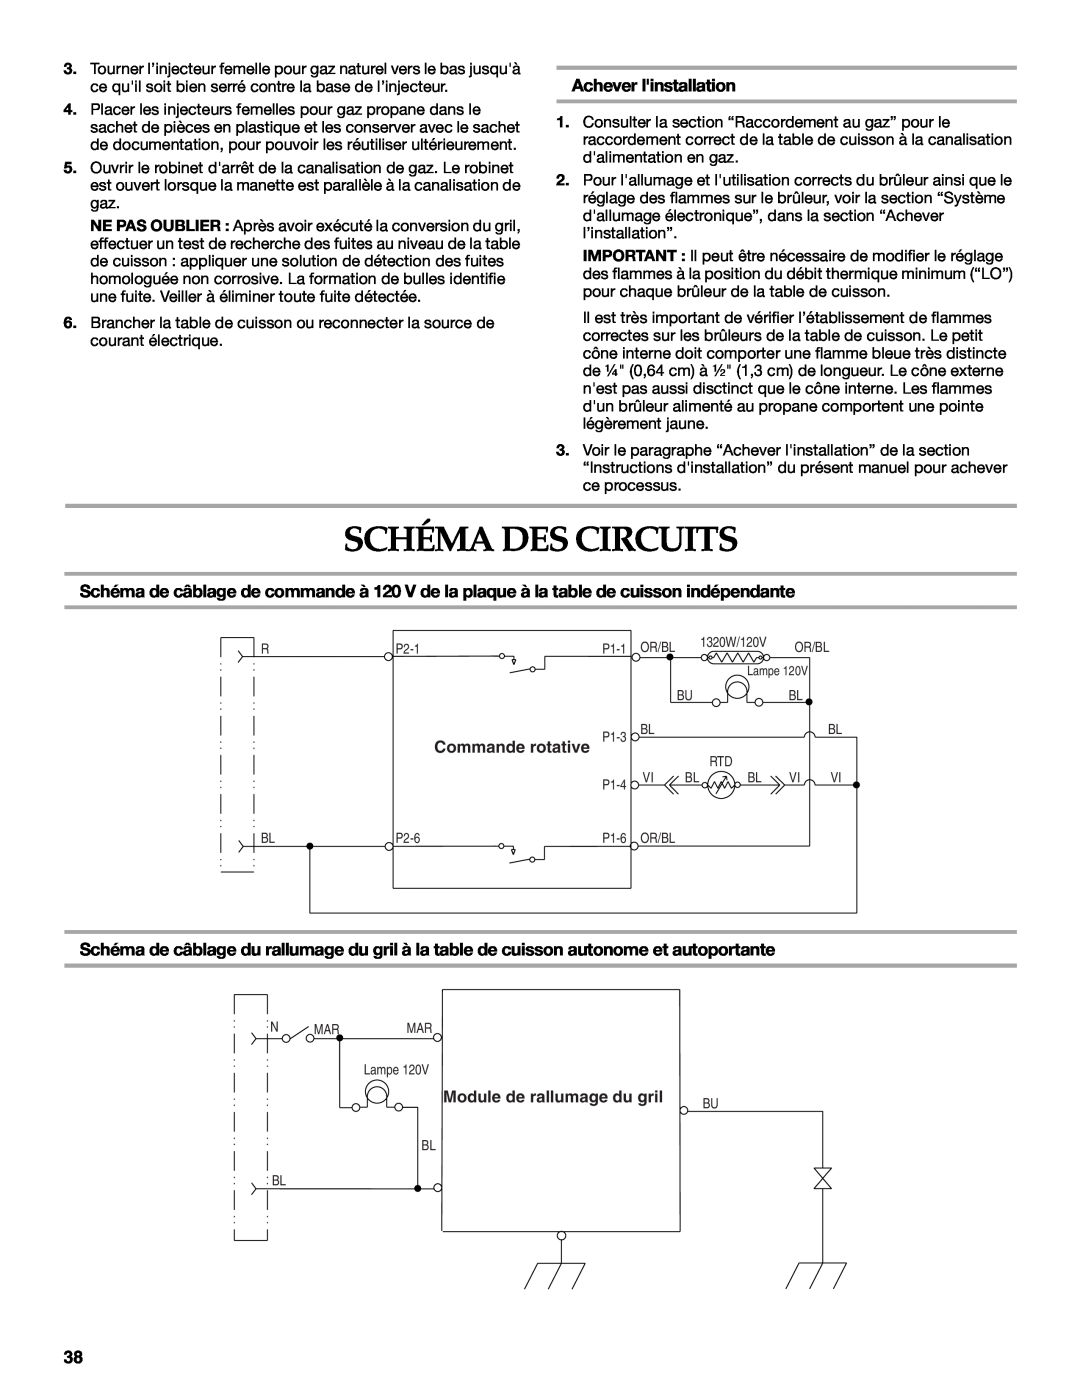 KitchenAid W10271686C Schéma Des Circuits, Achever linstallation, Commande rotative, Module de rallumage du gril 